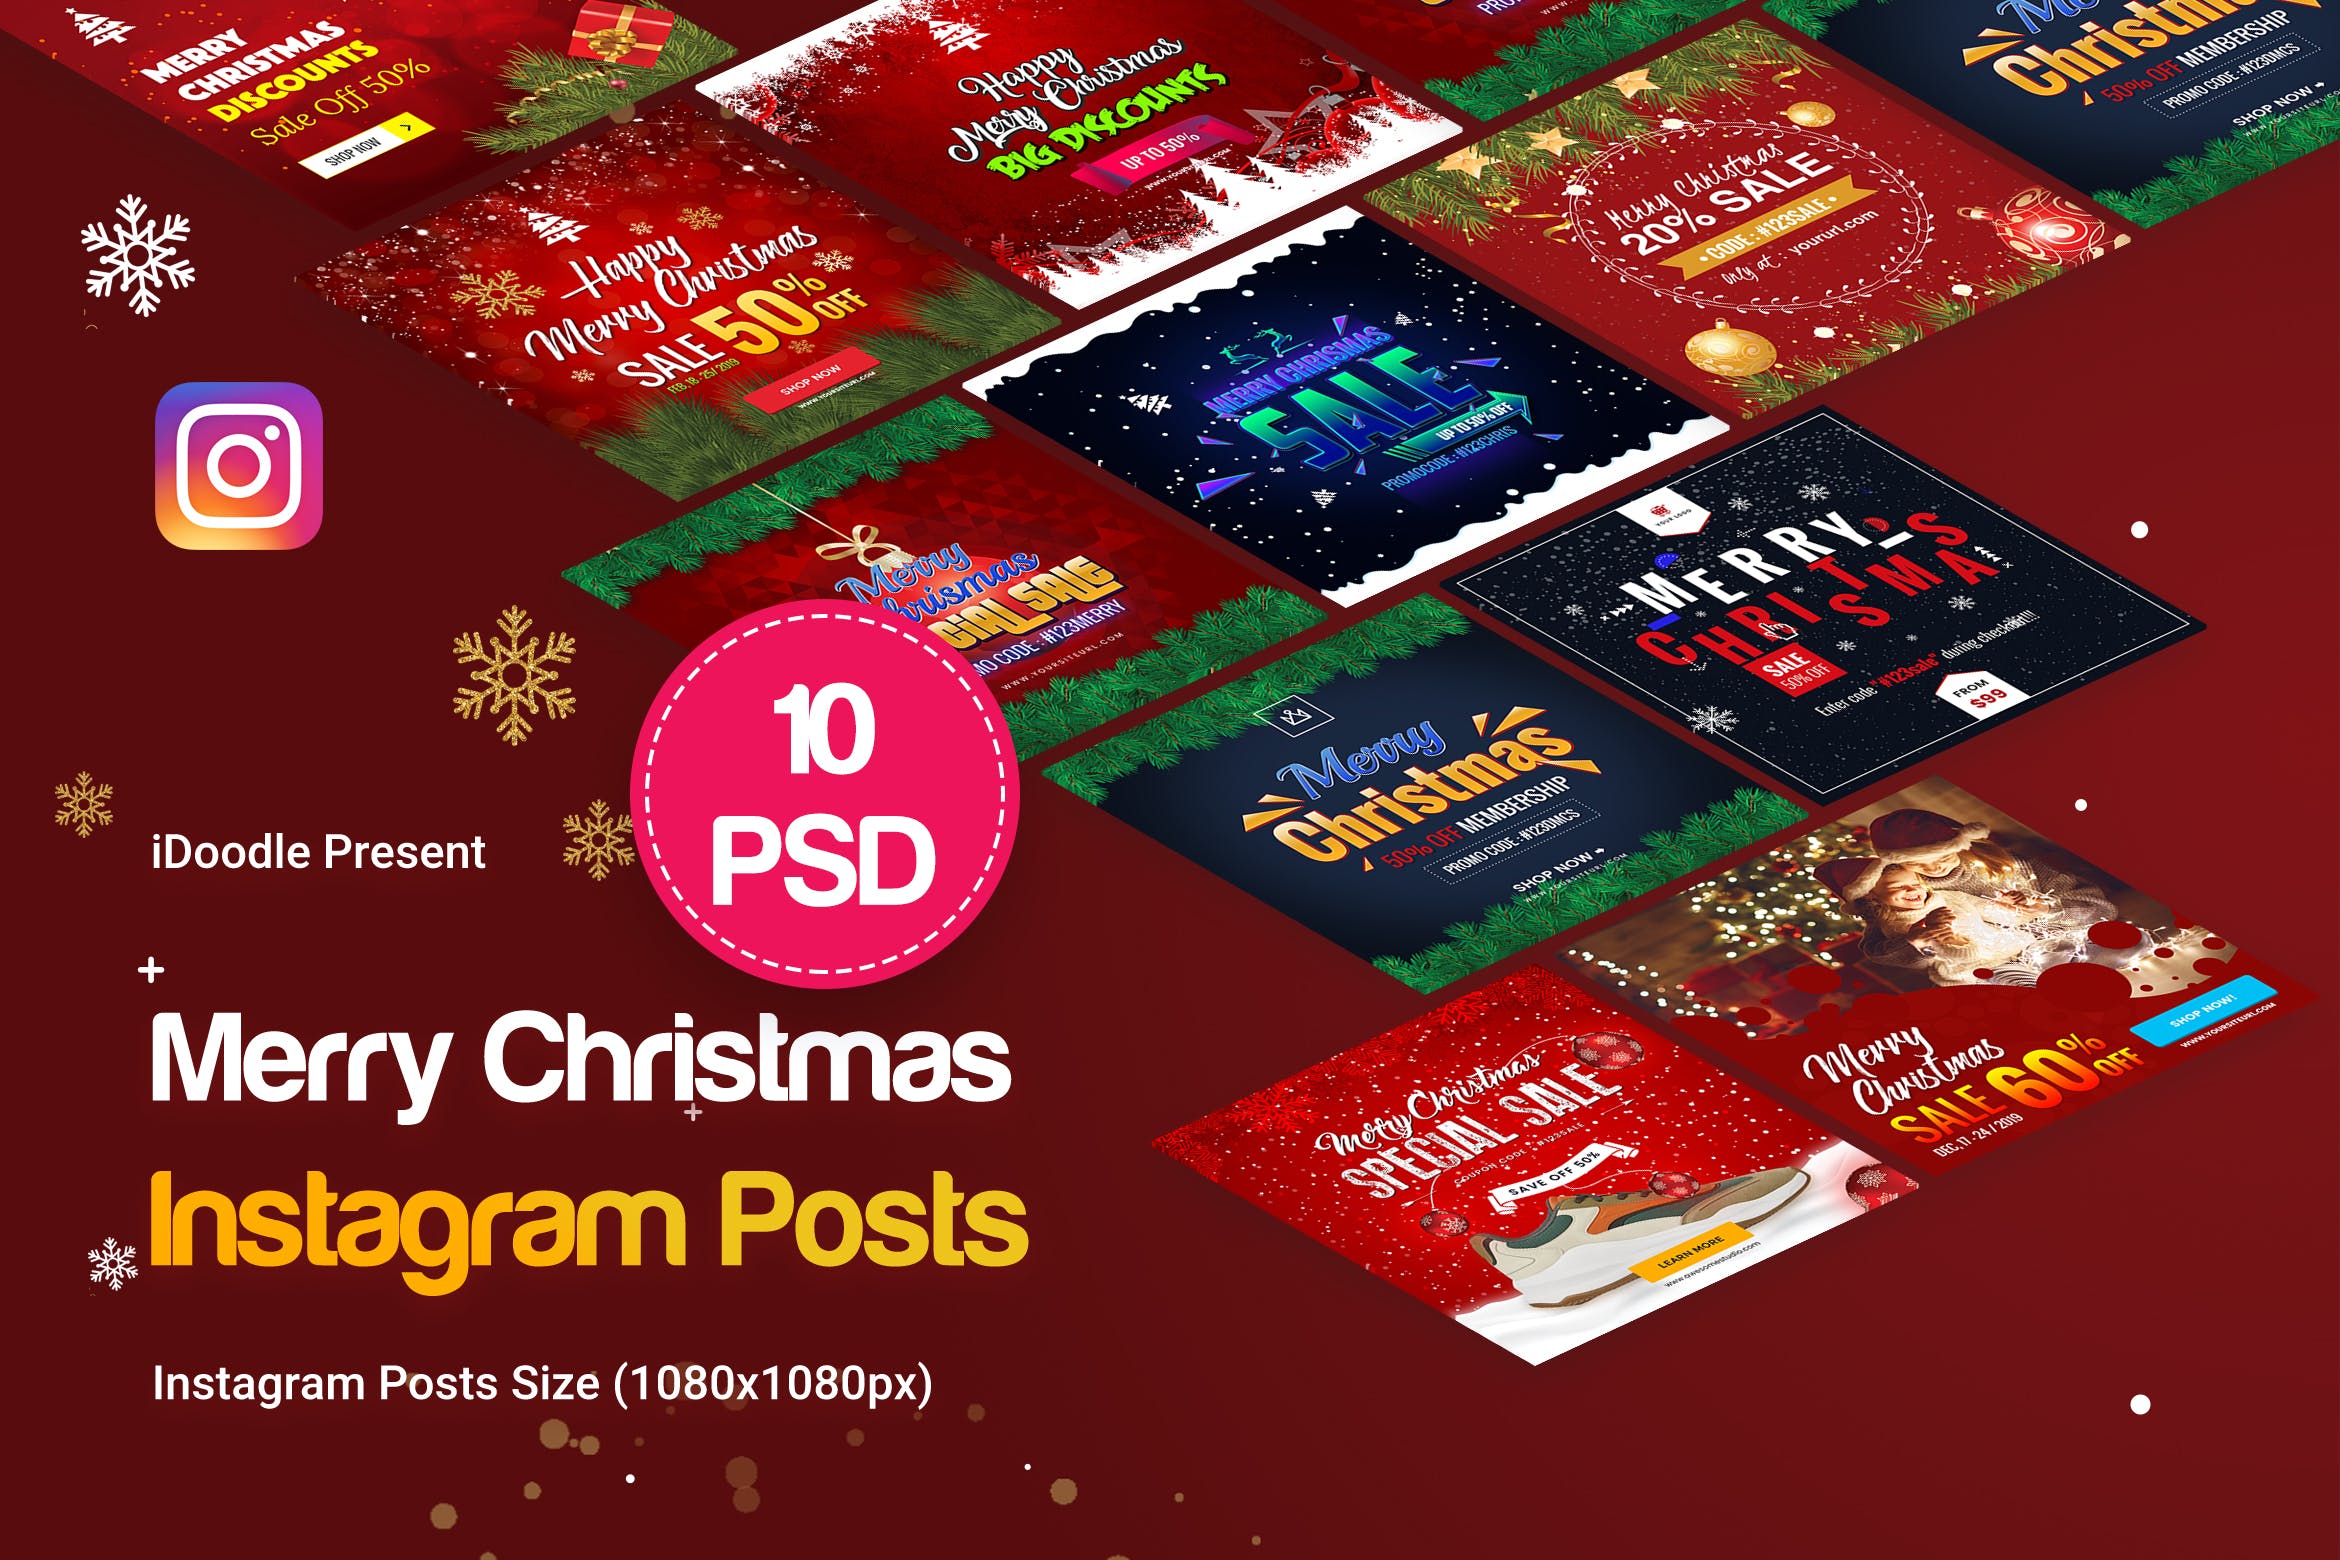 圣诞节促销活动Instagram社交平台广告设计模板素材库精选 Merry Christmas Instagram Posts插图